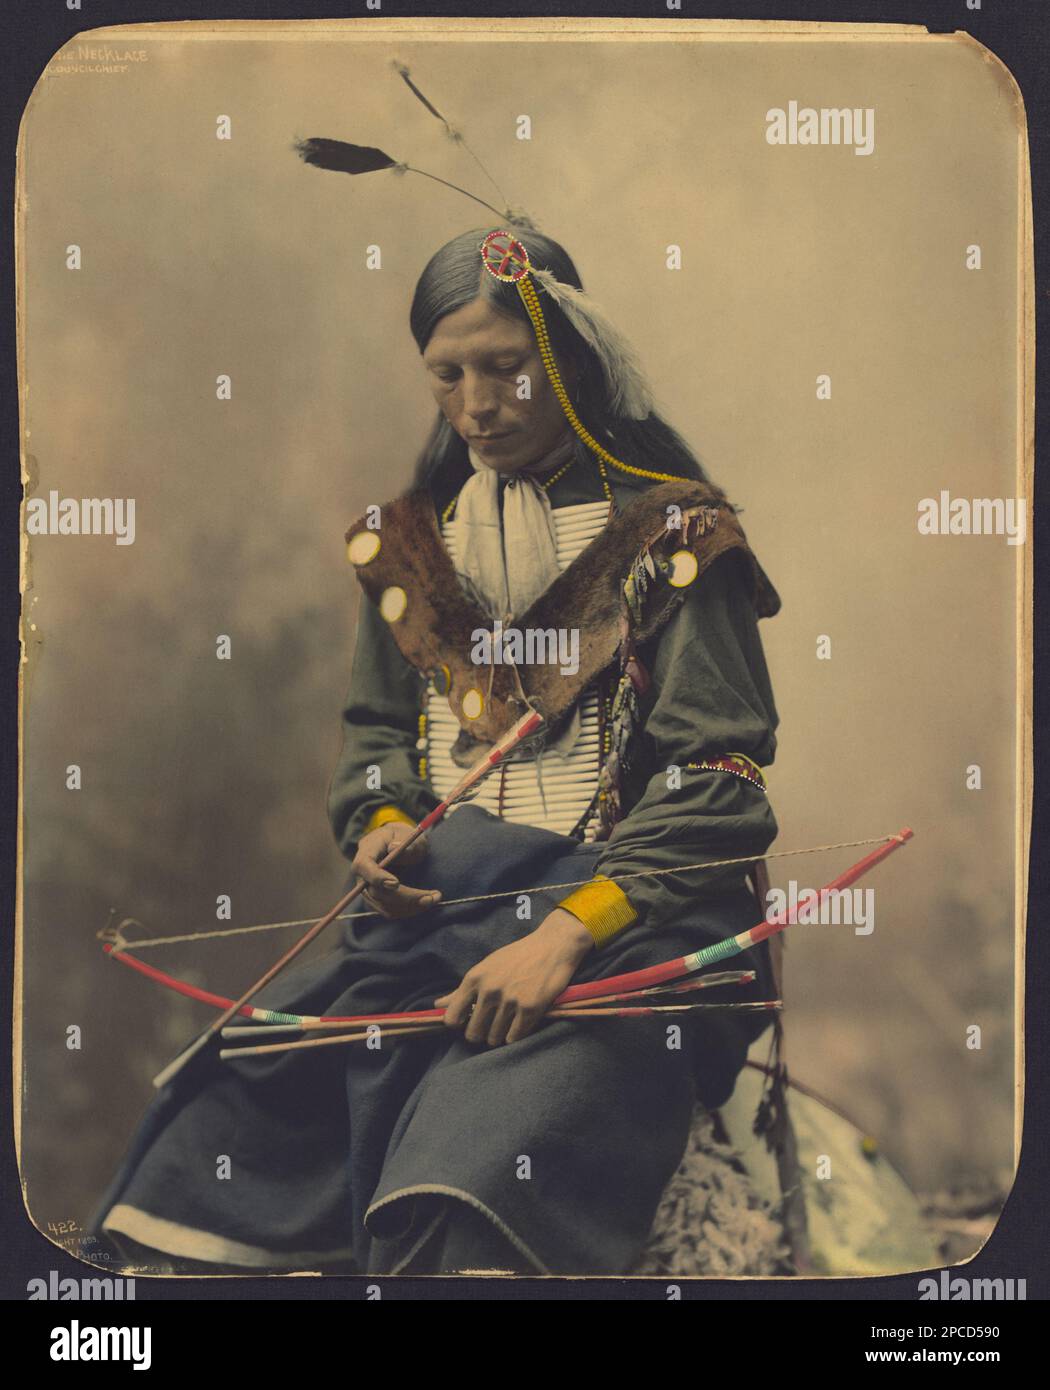 1899 , USA : Native American CHIEF Bone Necklace , Council Chief di OGLALA SIOUX . Foto di Heyn Photo, Omaha , Nebrasca . - STORIA - foto storiche - foto storica - indiani - INDIANI D' AMERICA - PELLEROSSA - nativi americani - indiani d'America del Nord - indiani d'America del Nord - CAPO TRIBU' INDIANO - GUERRIERO - GUERRIERO - ritratto - ratto - arco e freccie - stiffs - arciere - archer - SELVAGGIO WEST - piuma - piume - piume - ---- Archivio GBB Foto Stock